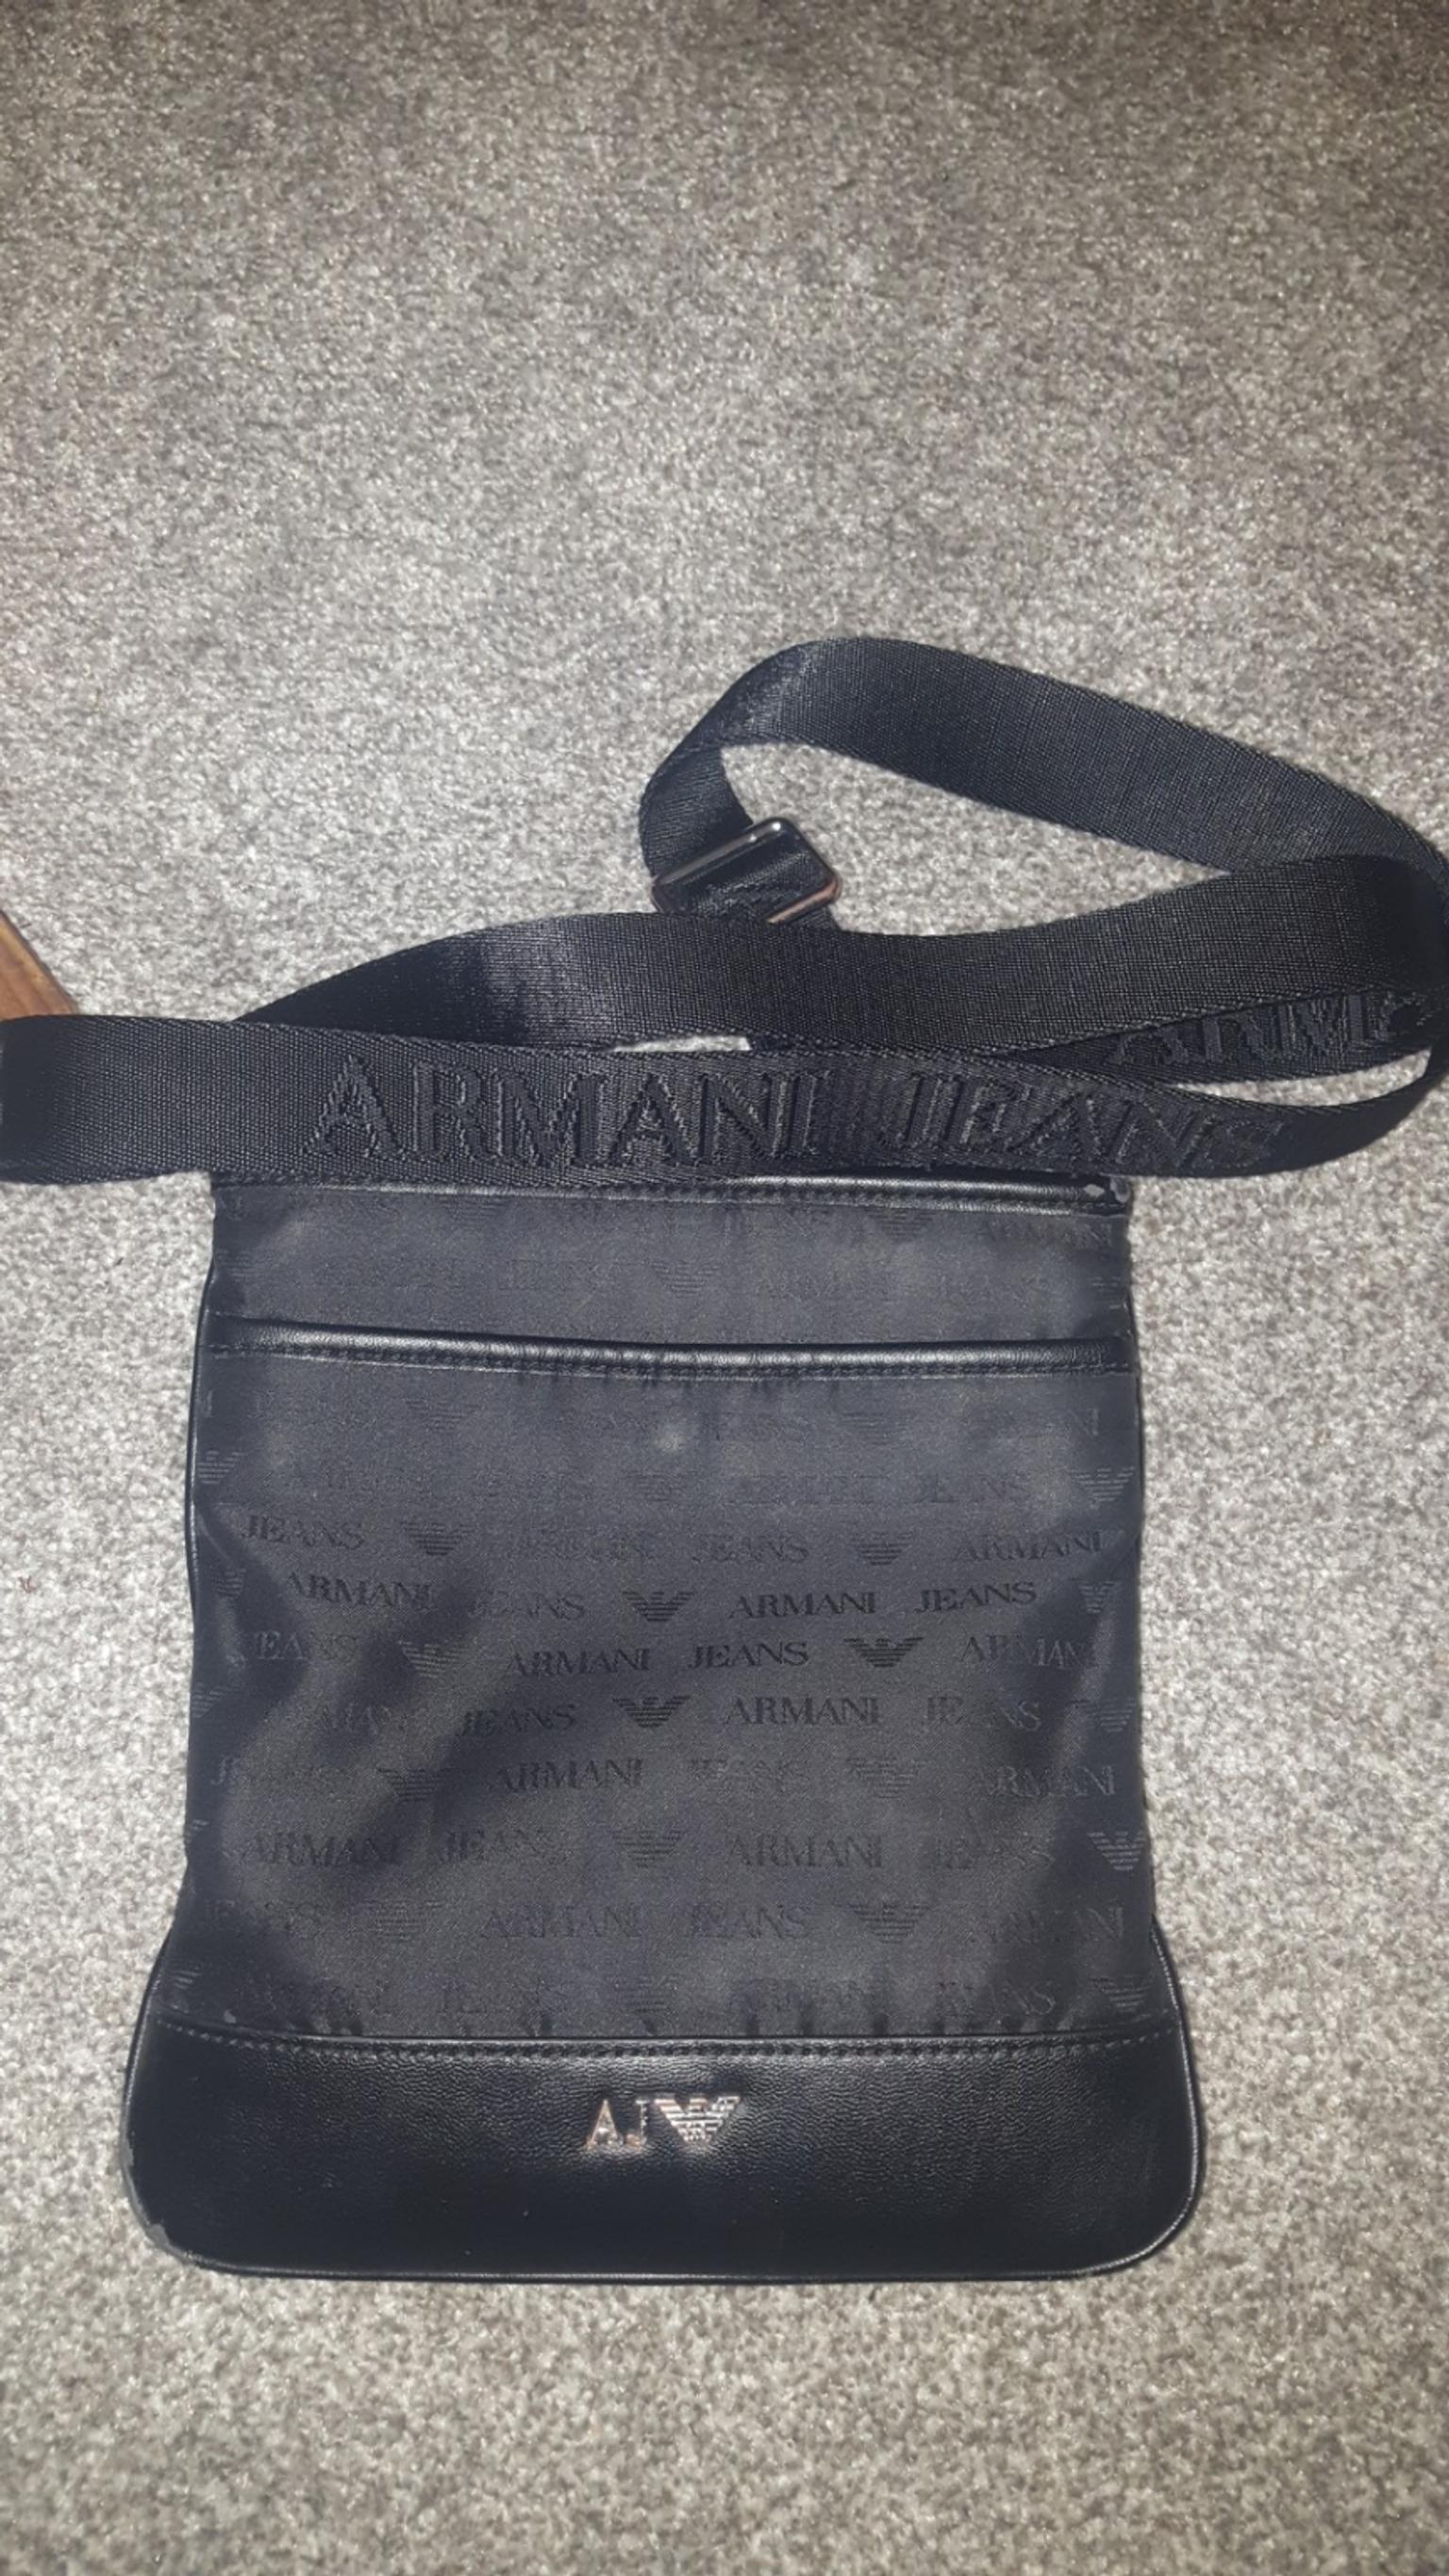 armani bags cheap - 57% OFF 